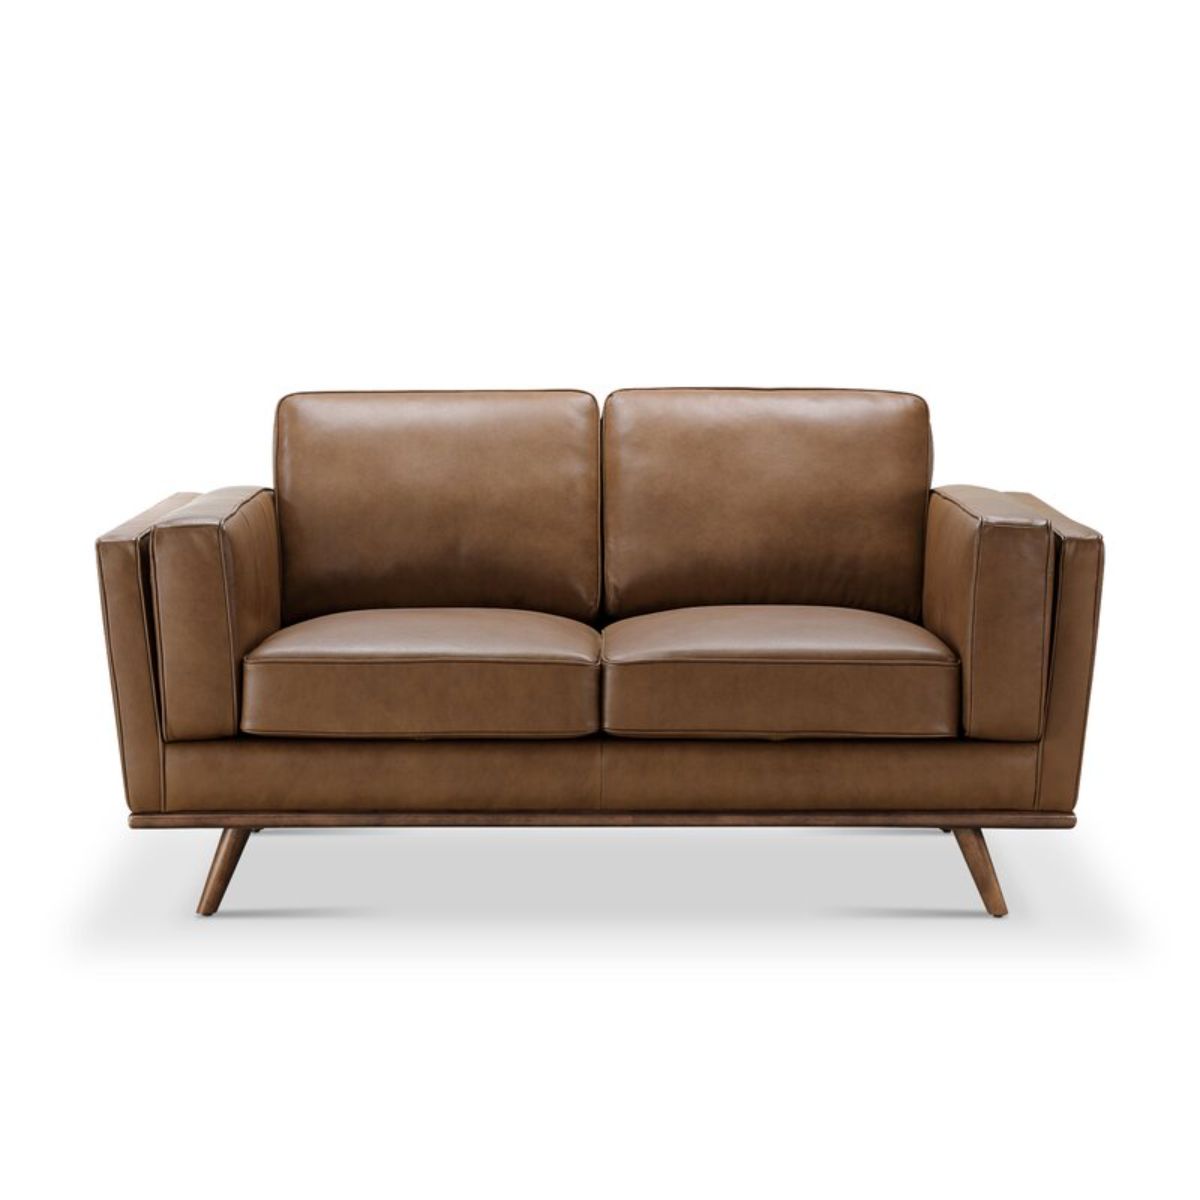 由Allmodern家具制作的华丽双座棕色真皮沙发